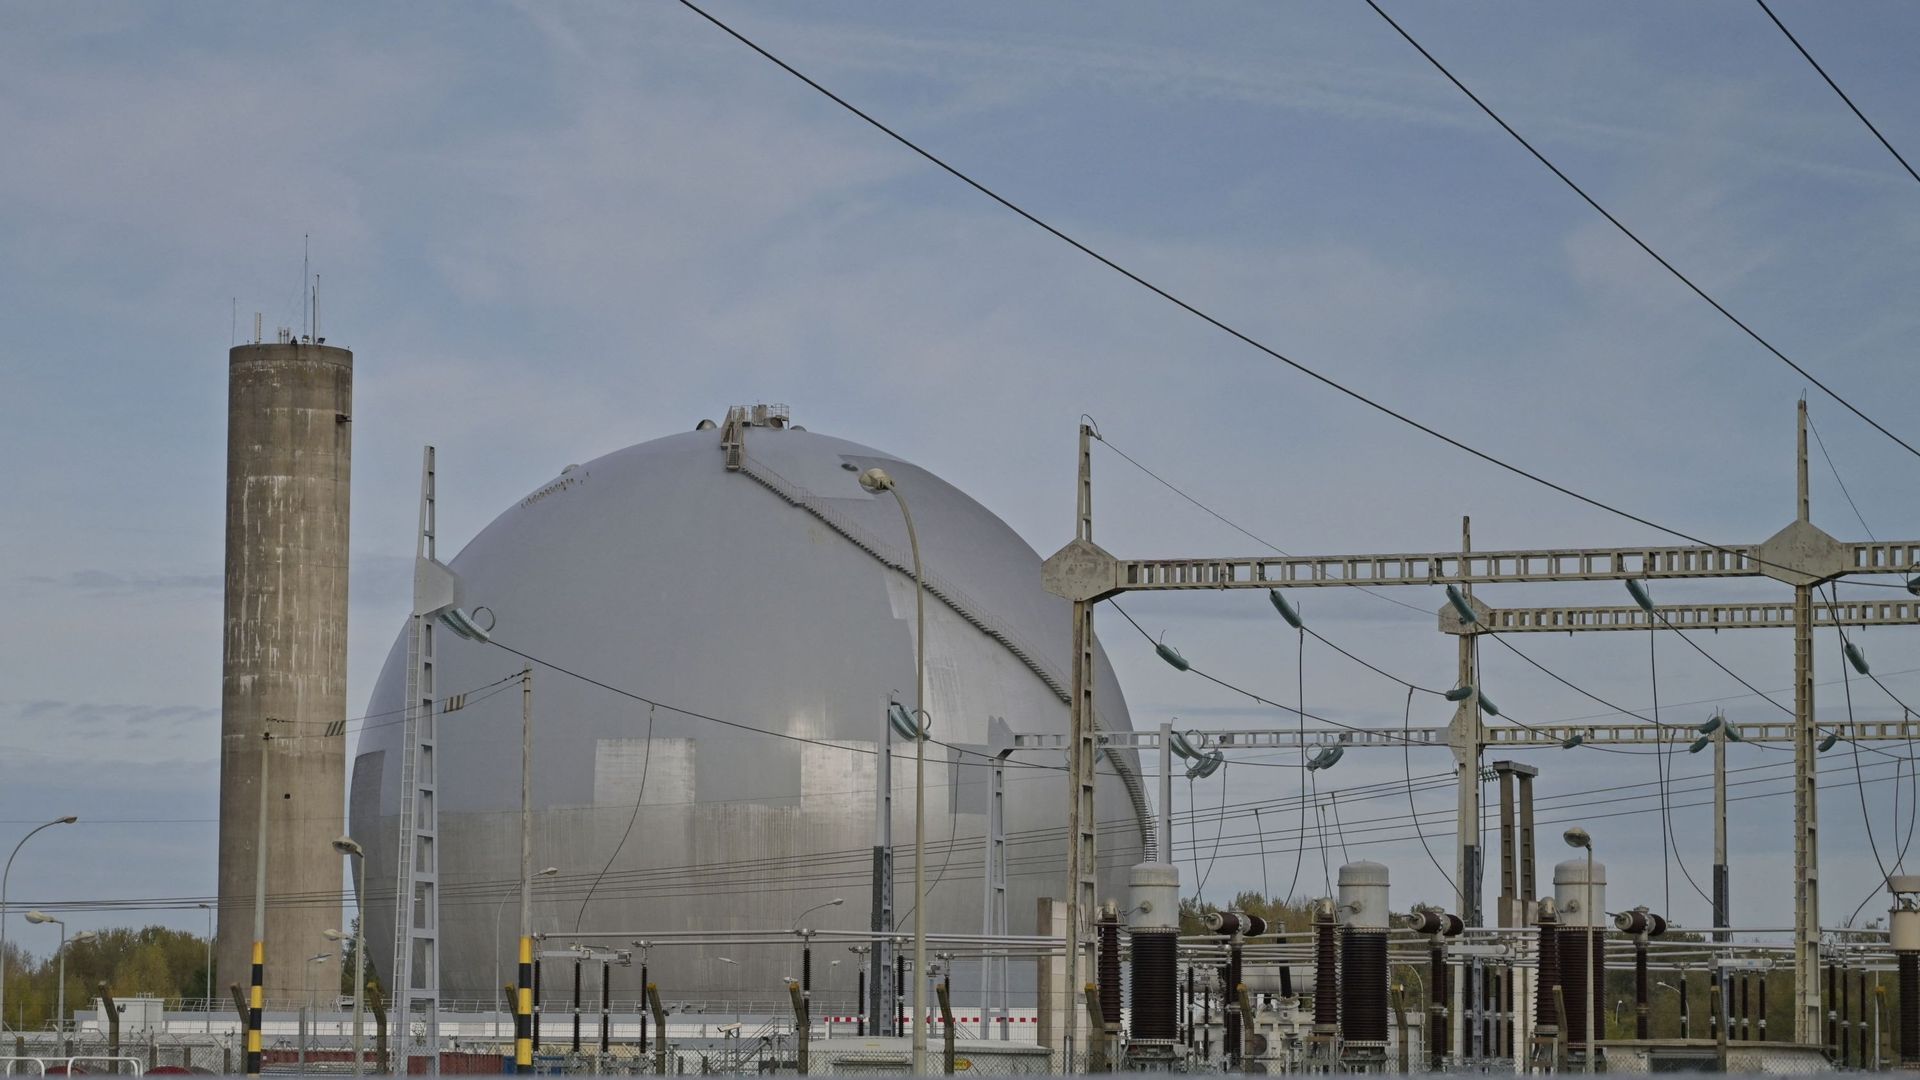 La "boule" de la centrale nucléaire de Chinon en France. Le réacteur de la "boule" est mis à l’arrêt en 1973 et EDF décide de la reconvertir en musée.